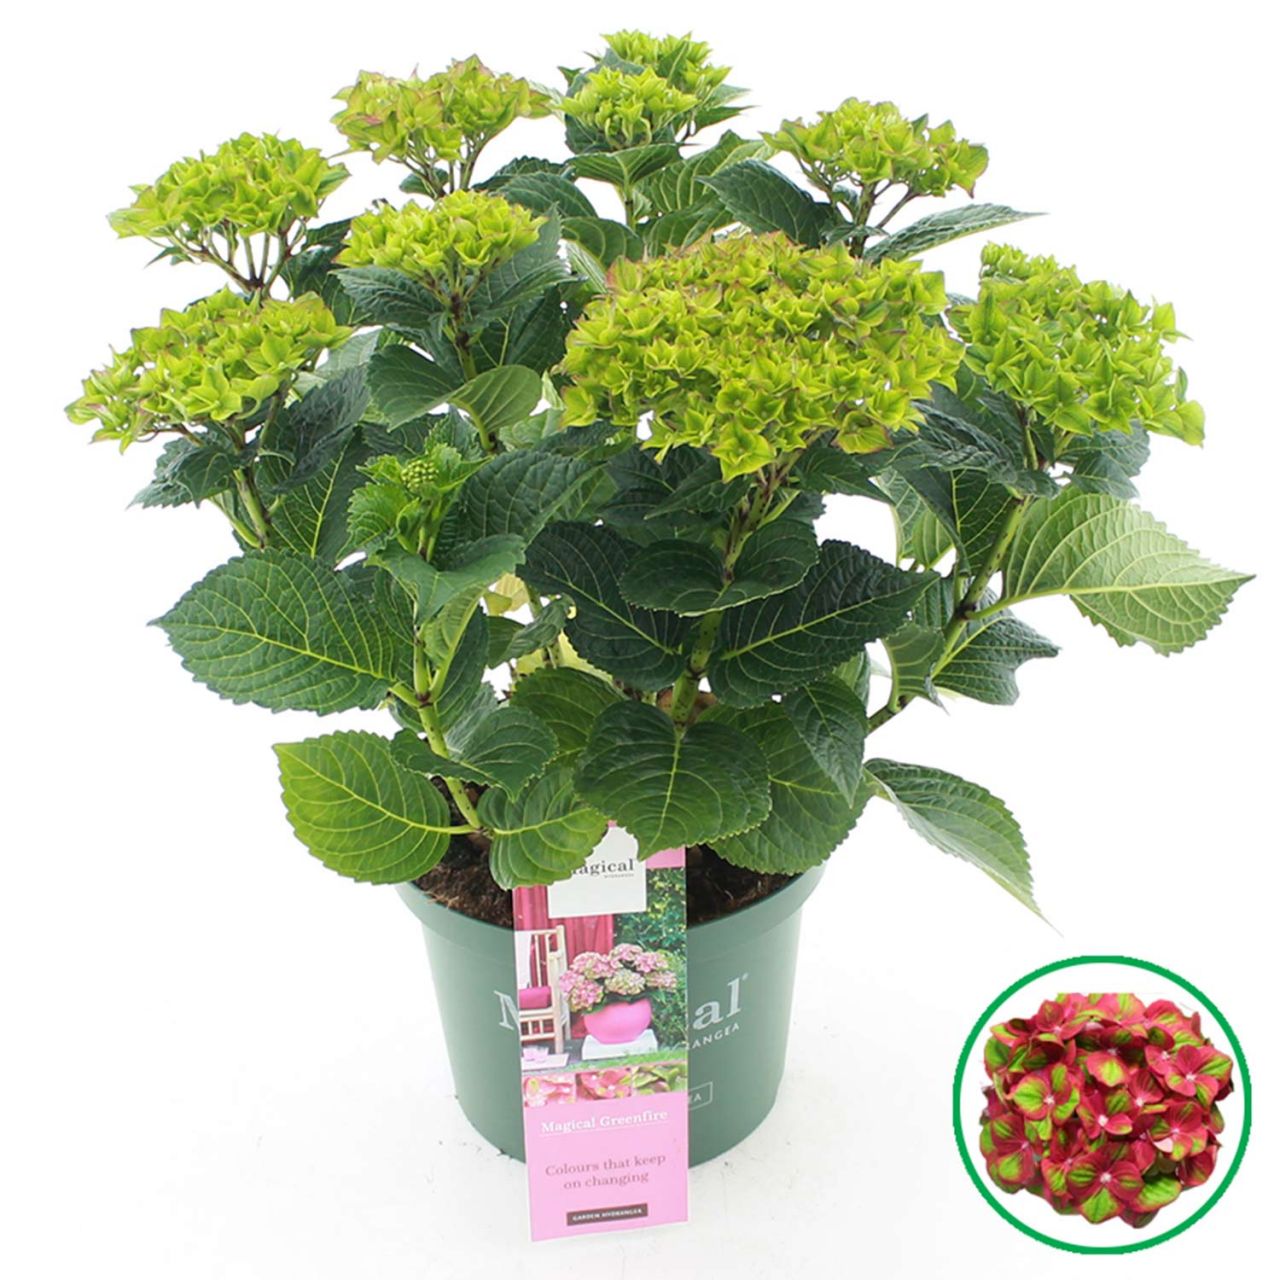 Kategorie <b>Blütensträucher und Ziergehölze </b> - Hortensie 'Magical® Greenfire' - Hydrangea macrophylla 'Magical Greenfire'